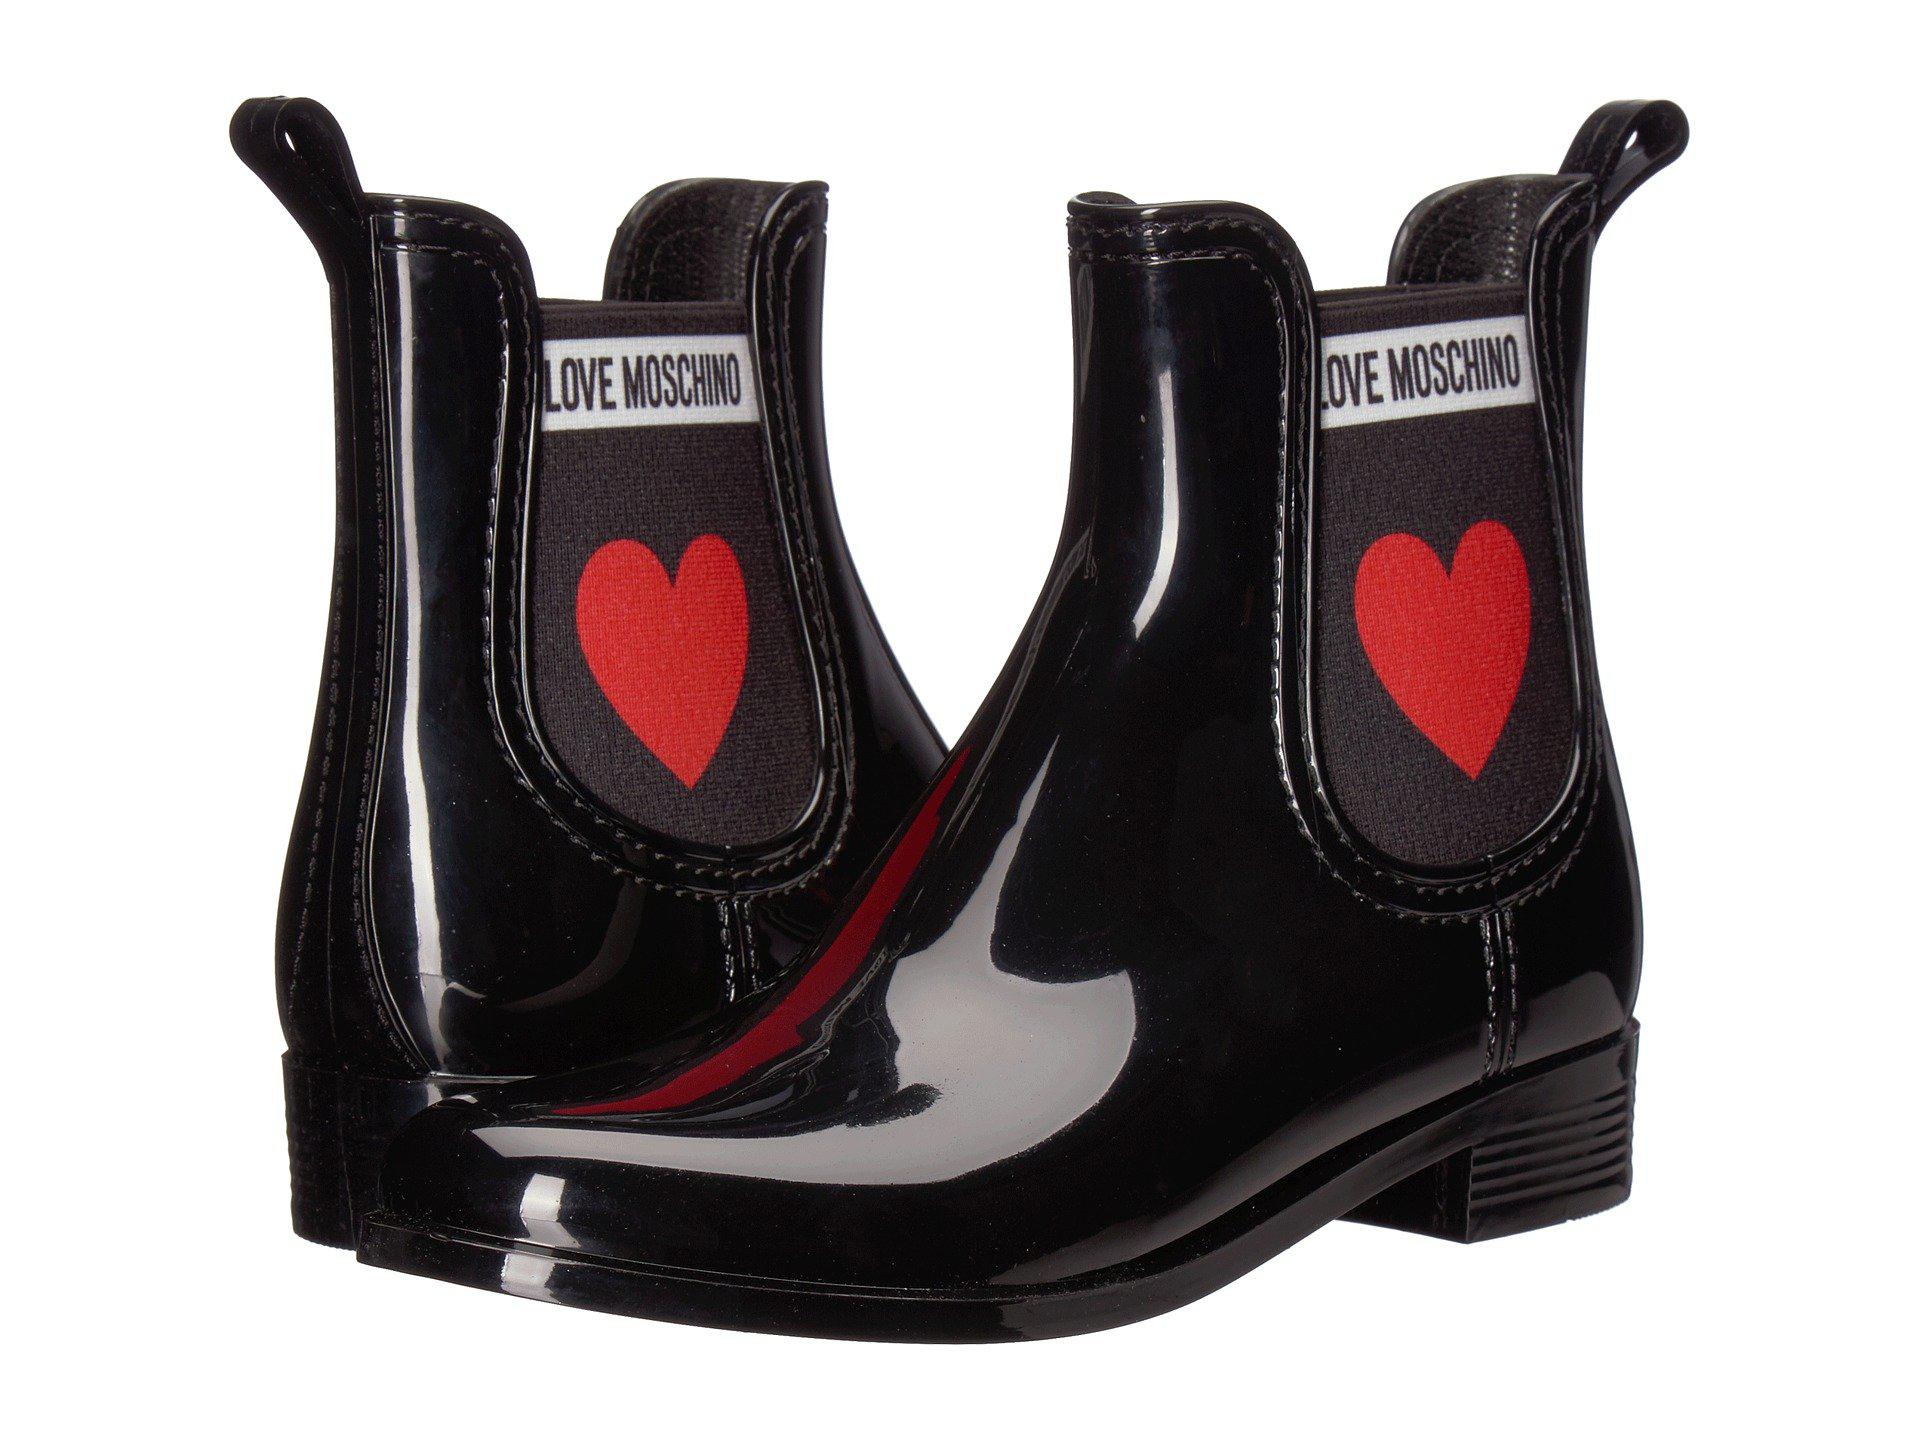 love moschino rain boots